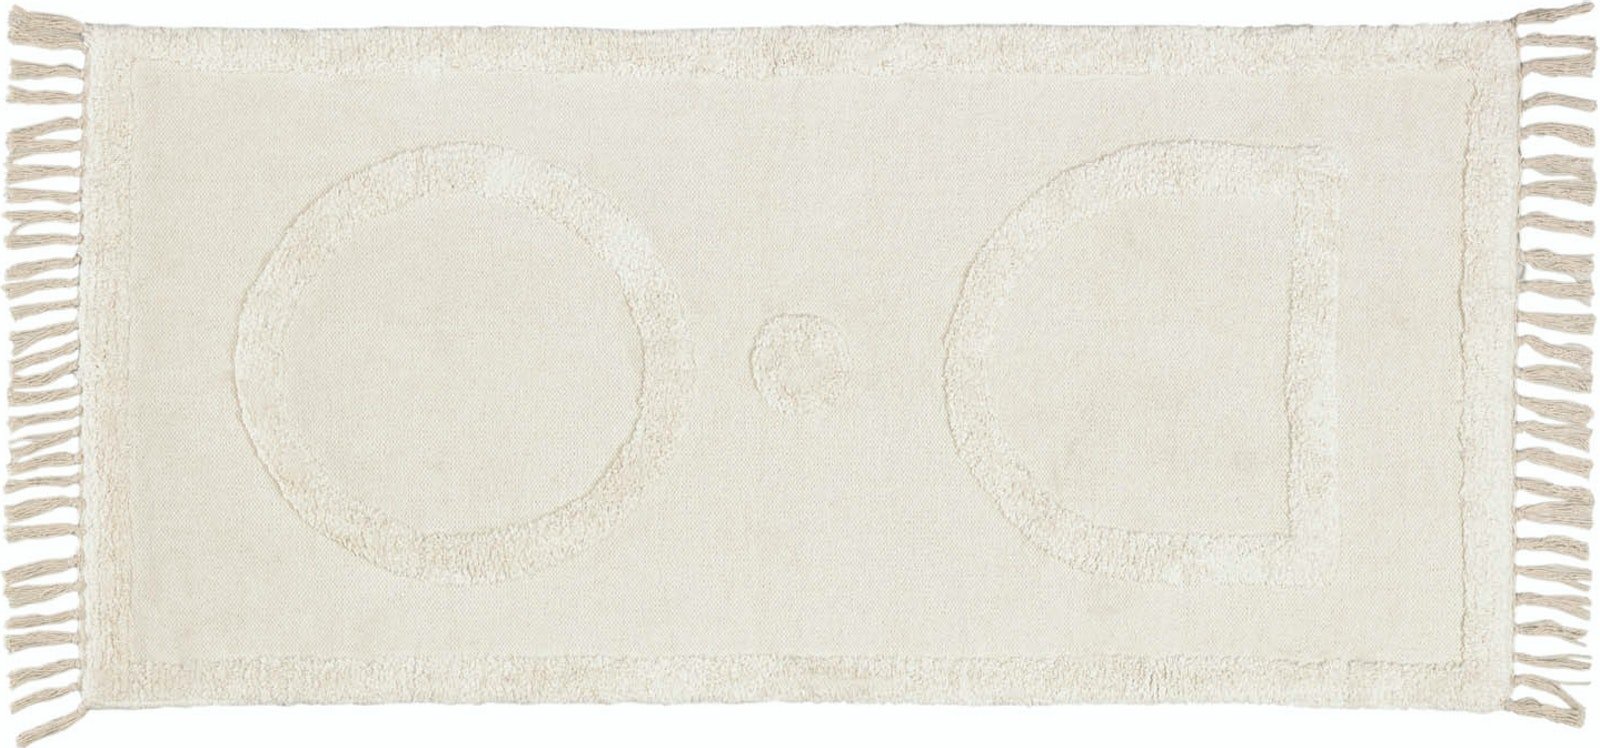 #1 - Bernabela, Tæppe, nordisk, moderne, naturlige fibre by LaForma (H: 1 cm. B: 70 cm. L: 140 cm., Beige)